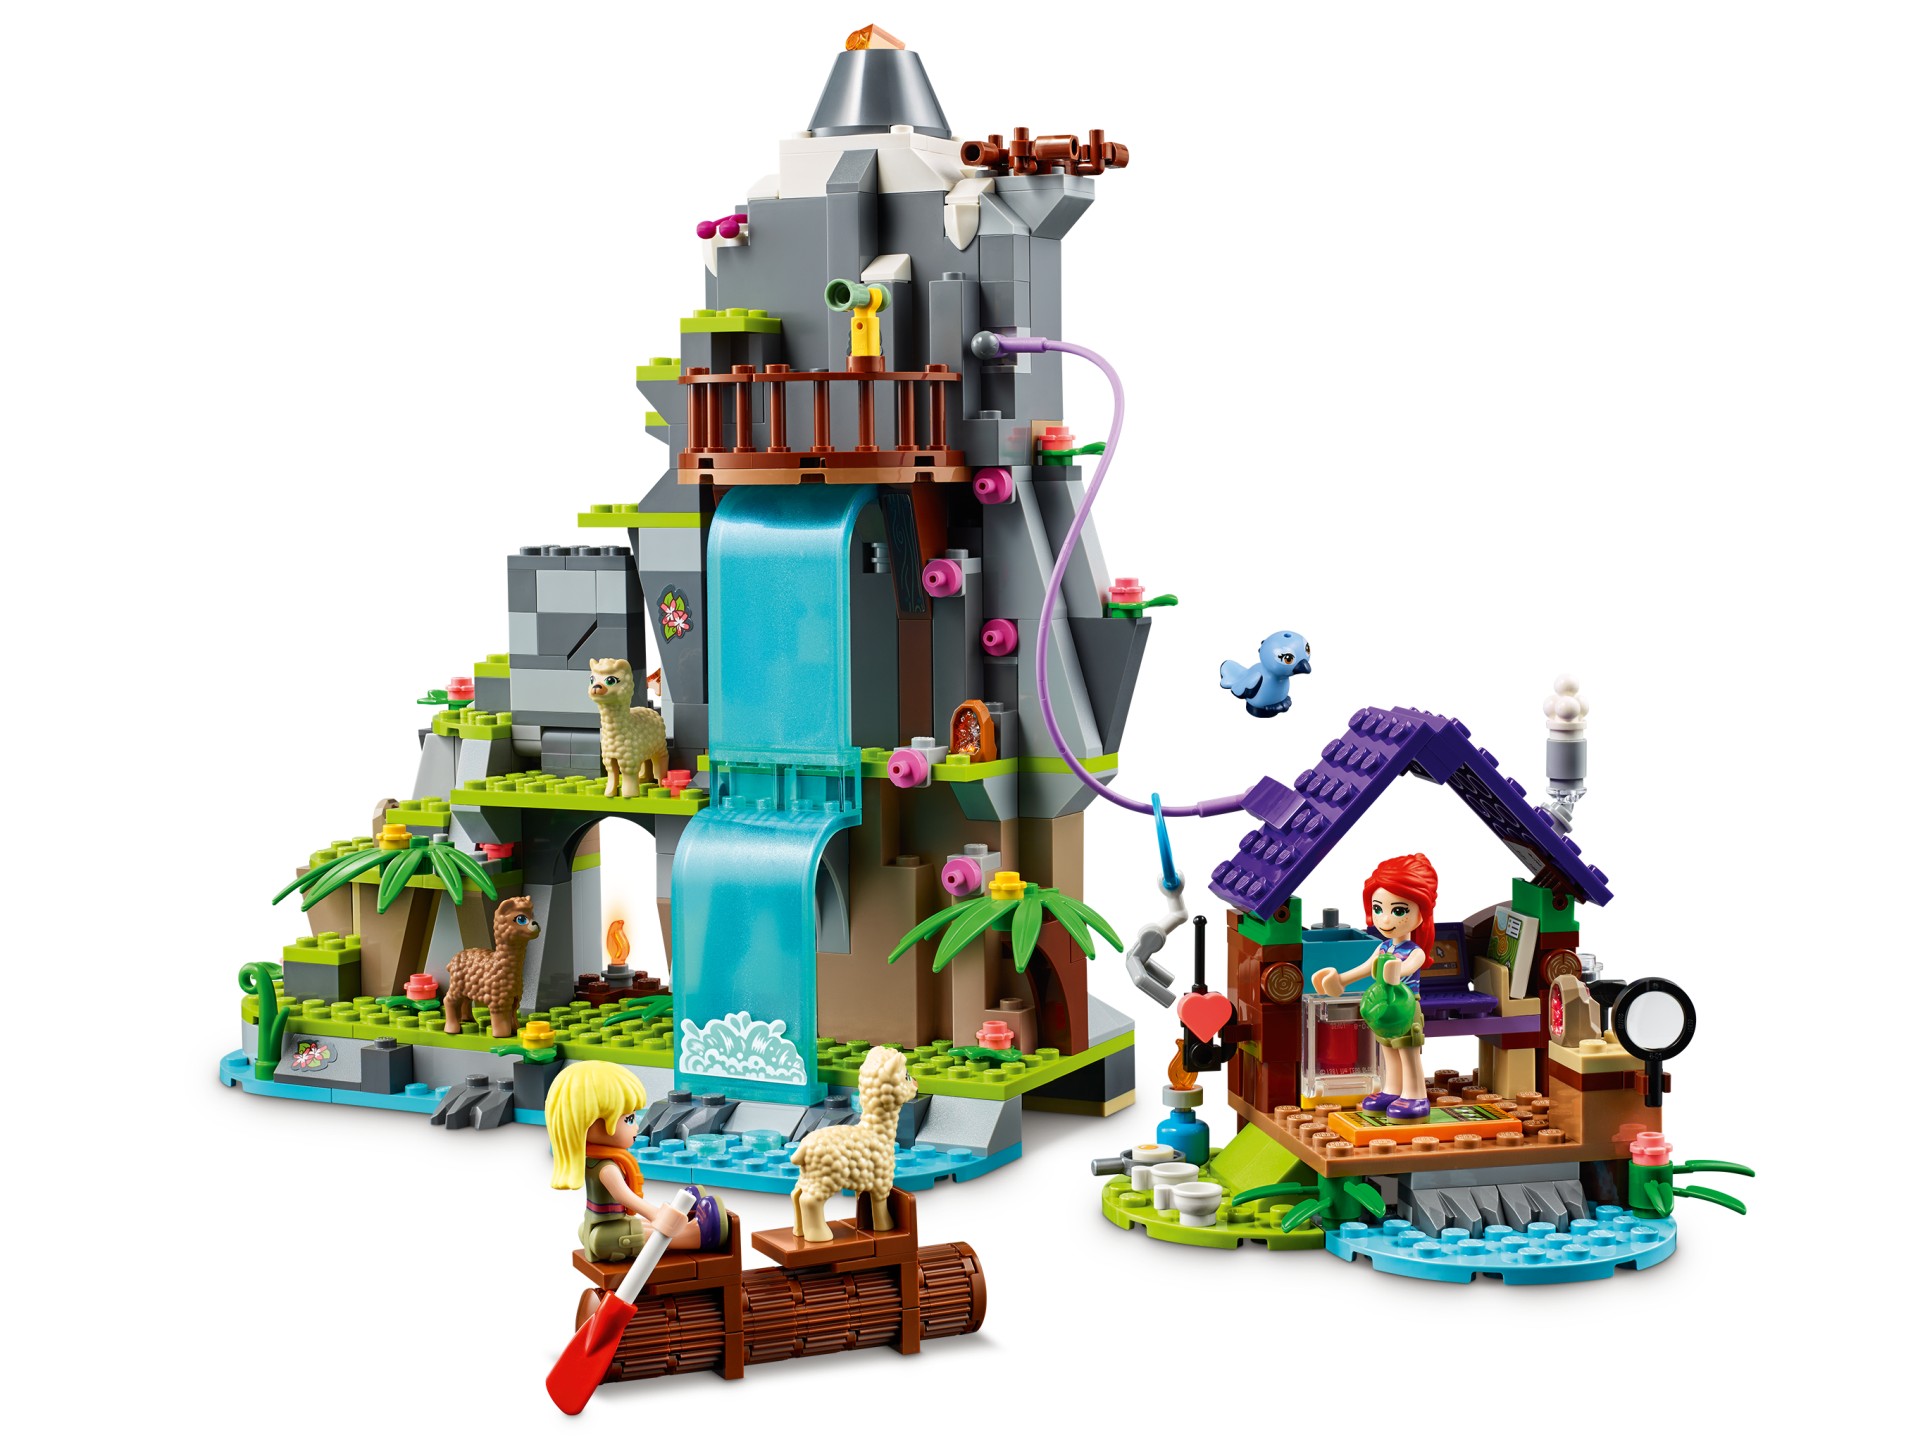 LEGO Friends Sommer 2020 Neuheiten ab 1. Juni 2020 verfügbar - Brickzeit | Konstruktionsspielzeug